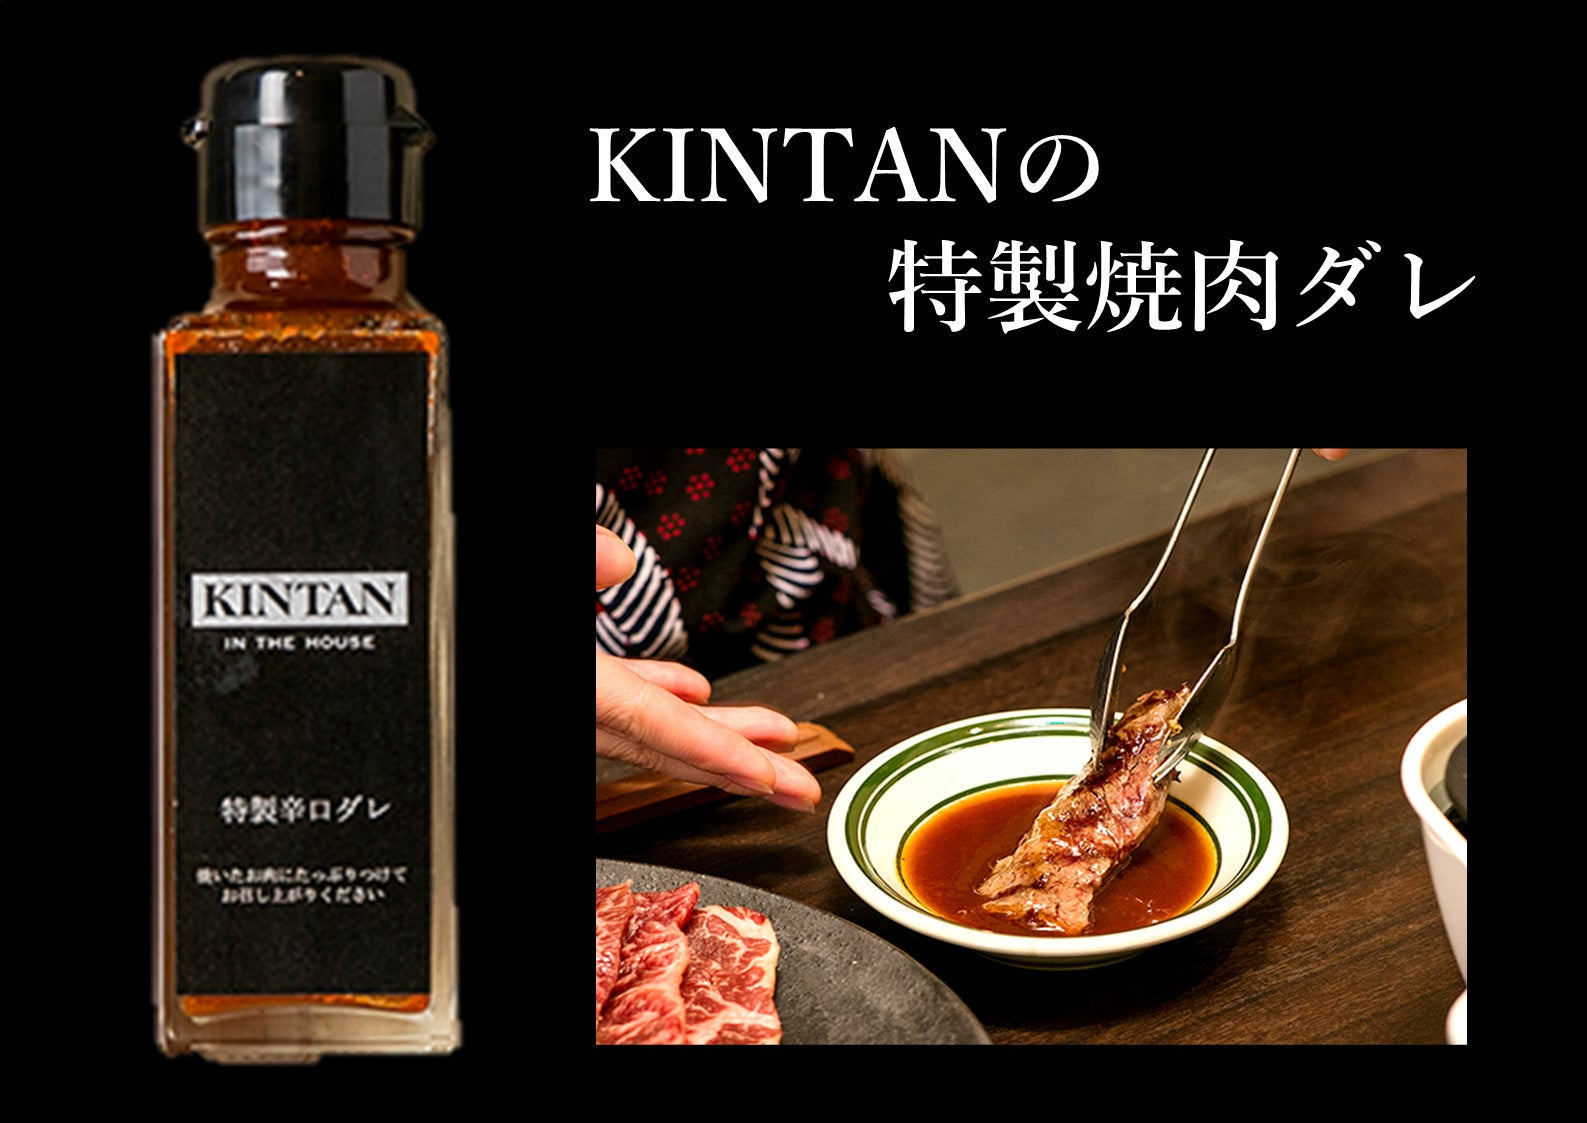 【八代目儀兵衛 × KINTAN】焼肉6種食べ比べと 新米3種のギフトセット